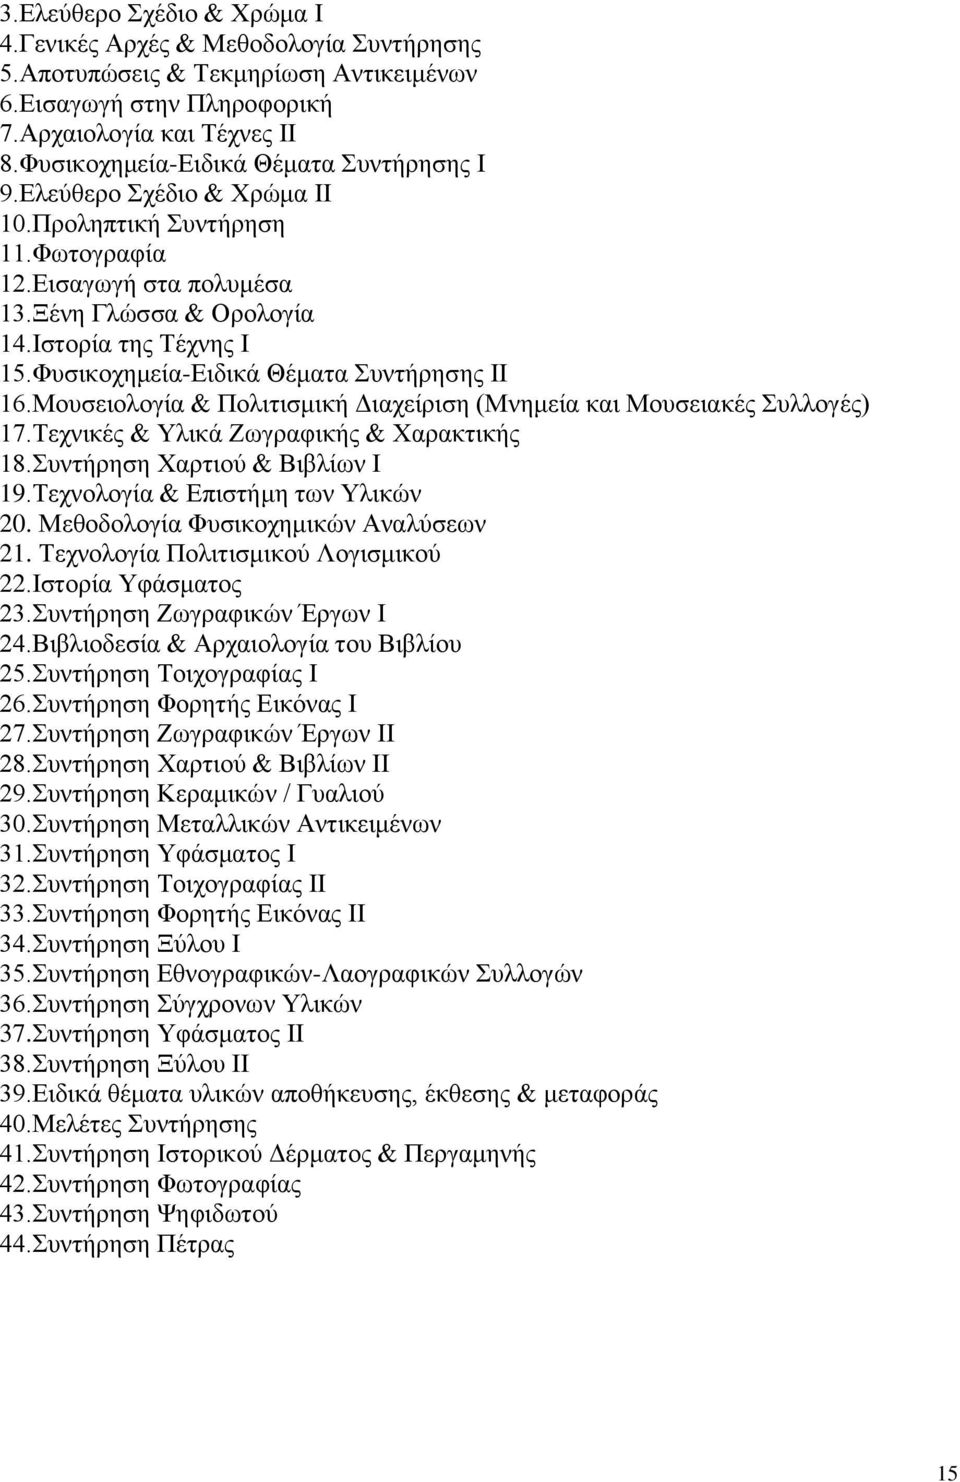 Φυσικοχημεία-Ειδικά Θέματα Συντήρησης ΙΙ 16.Μουσειολογία & Πολιτισμική Διαχείριση (Μνημεία και Μουσειακές Συλλογές) 17.Τεχνικές & Υλικά Ζωγραφικής & Χαρακτικής 18.Συντήρηση Χαρτιού & Βιβλίων Ι 19.